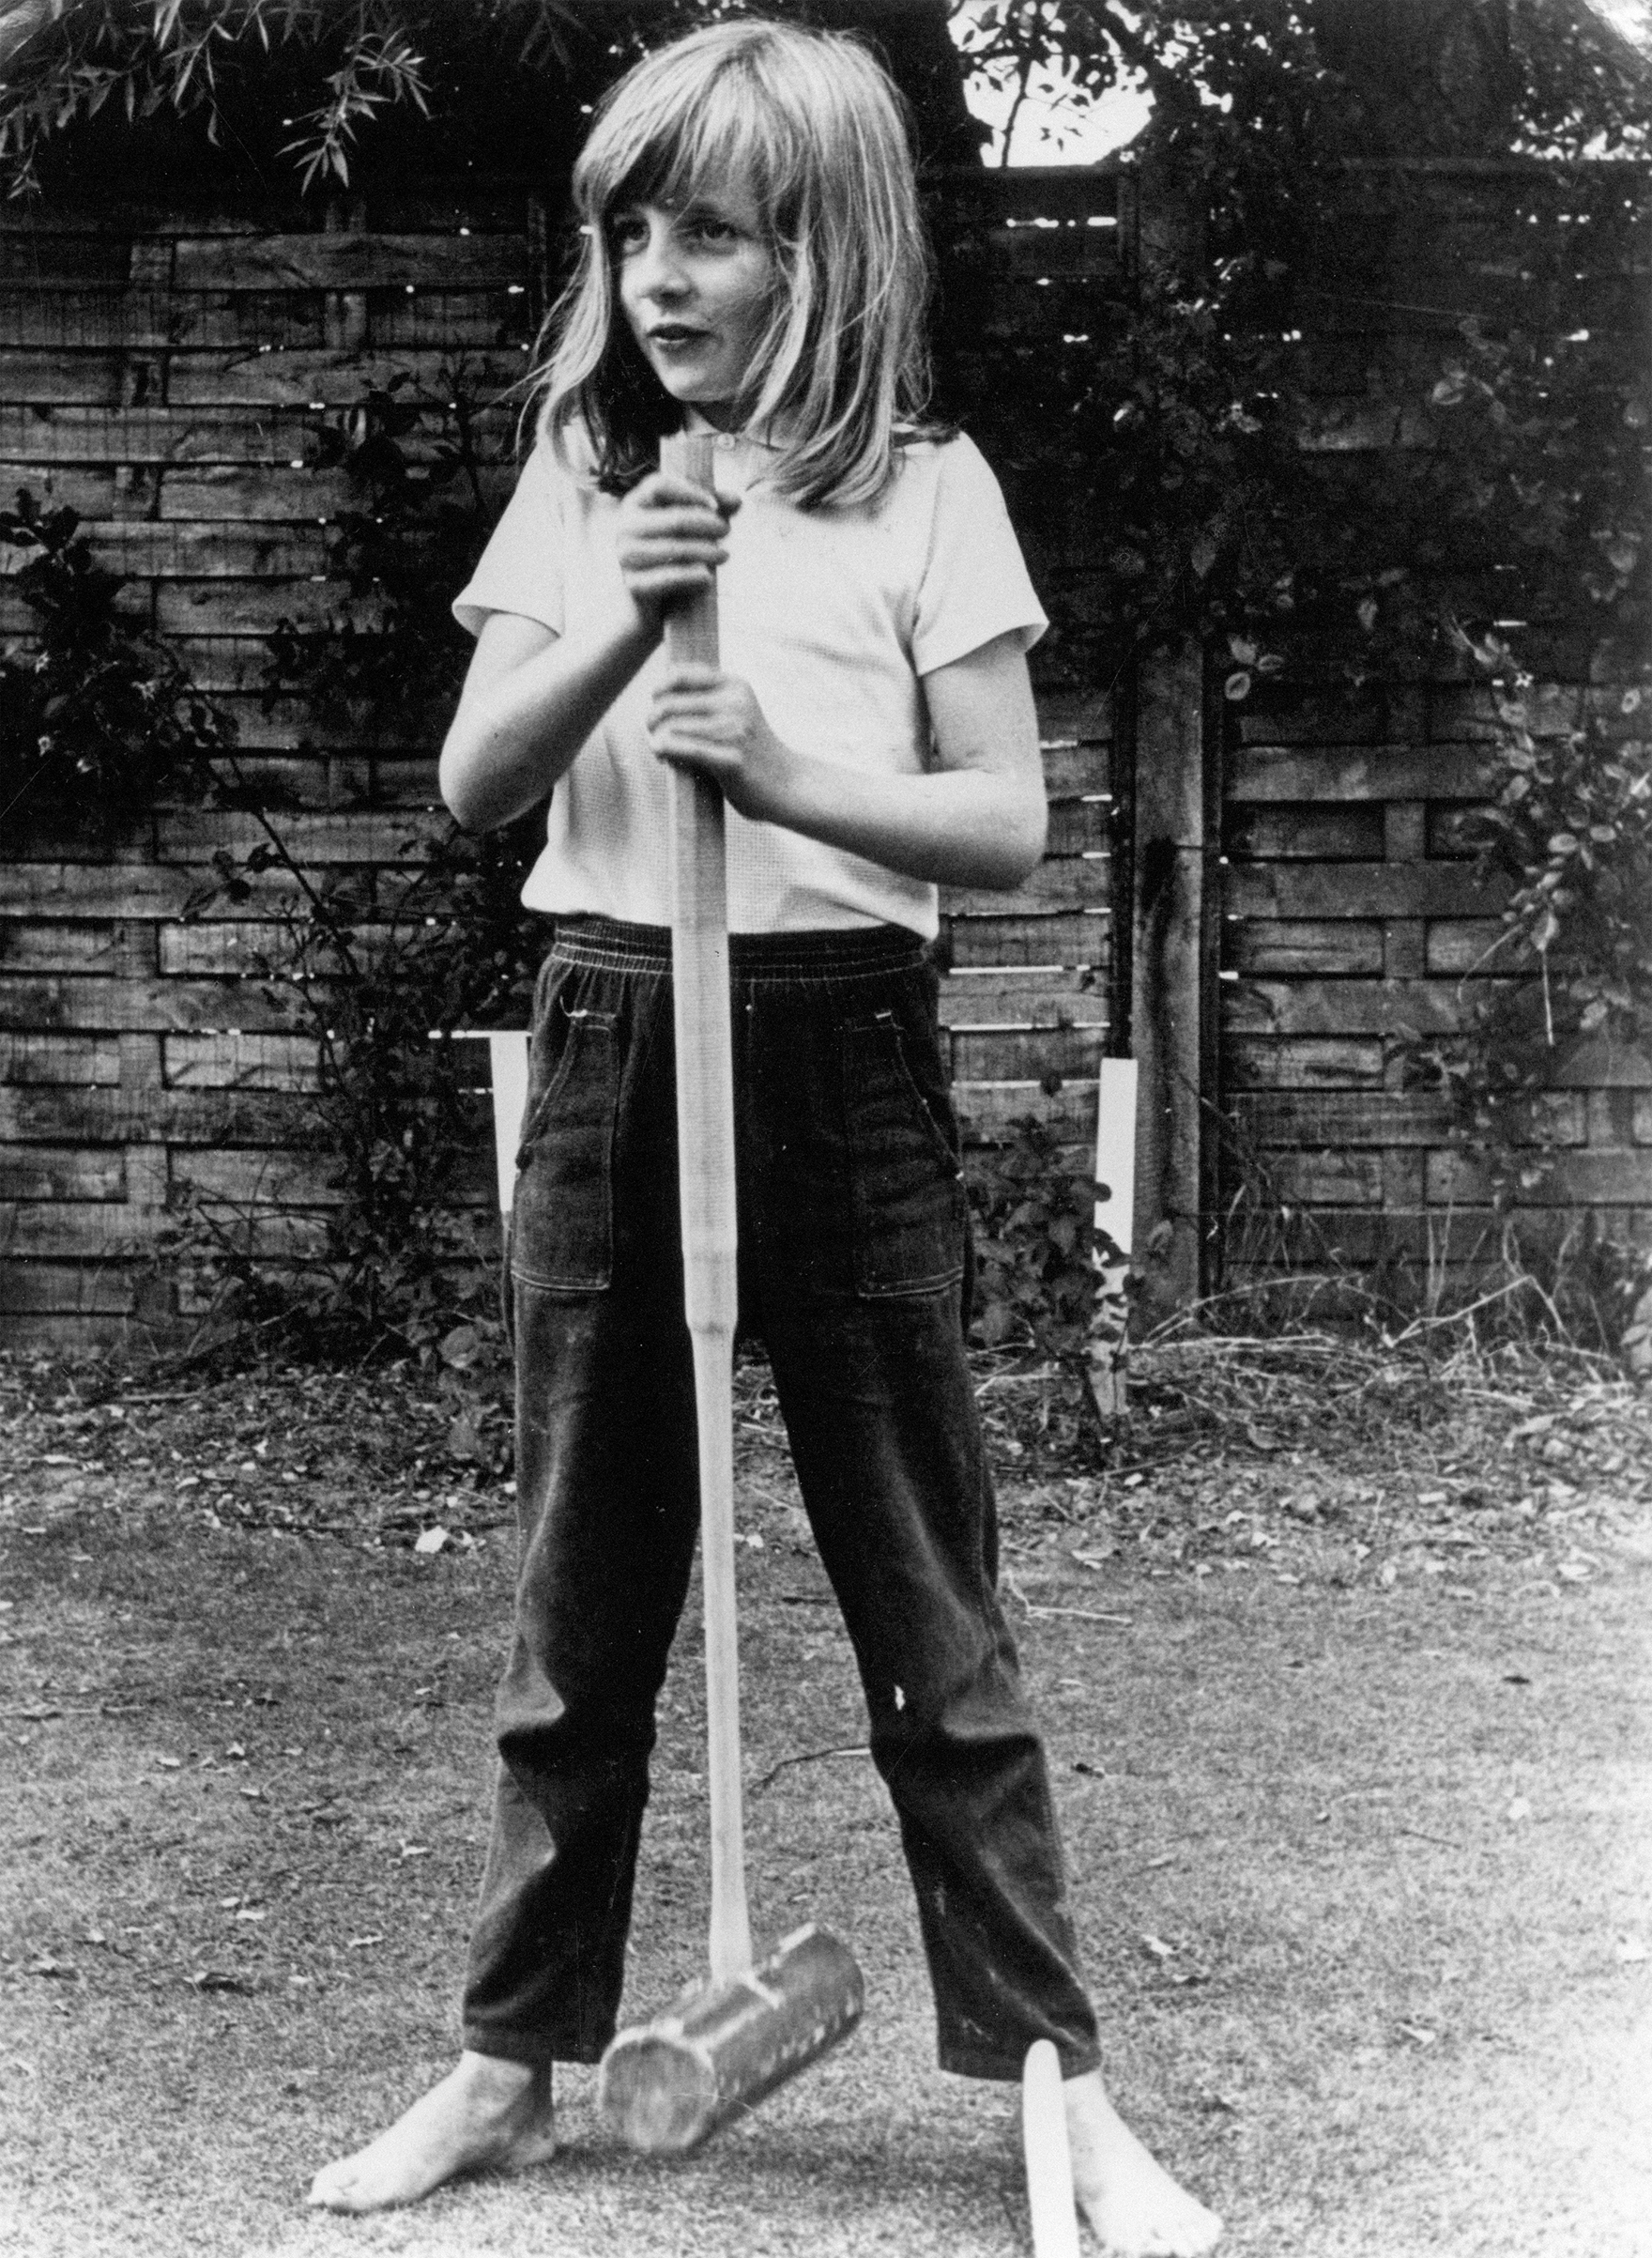 Princess Diana as a young girl.